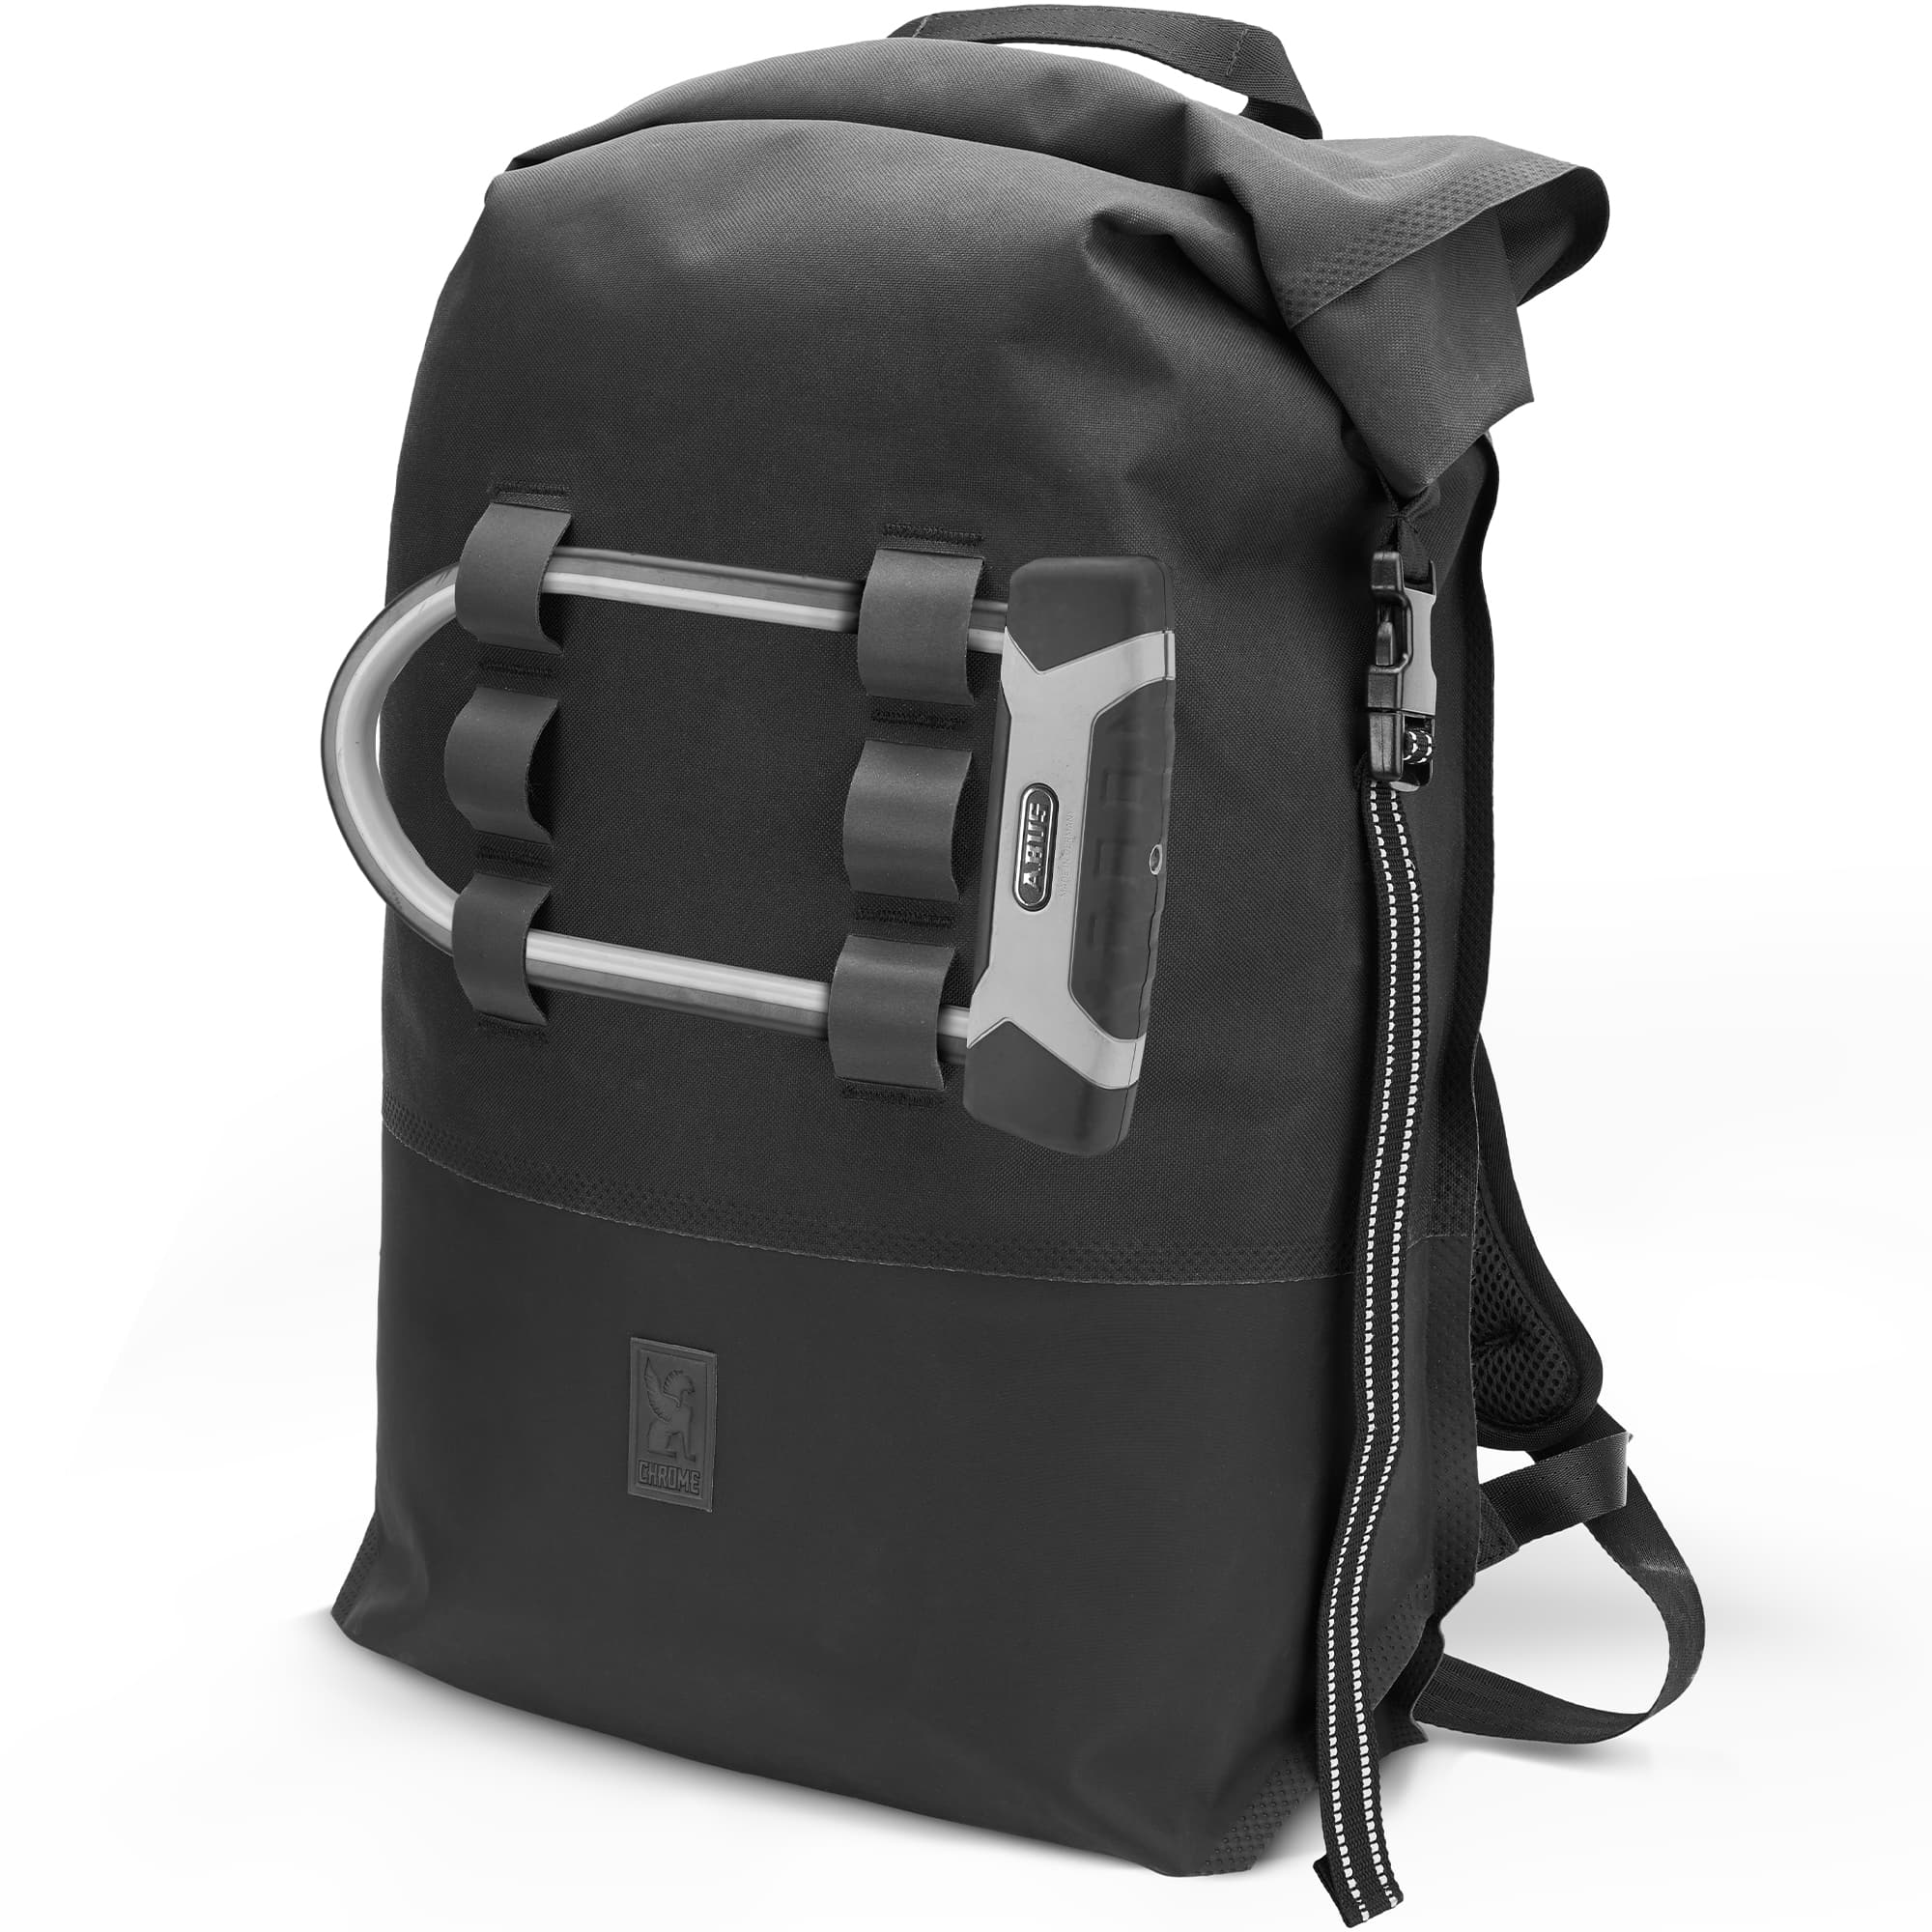 Waterproof 30L rolltop backpack in black u-lock holder detail #color_black